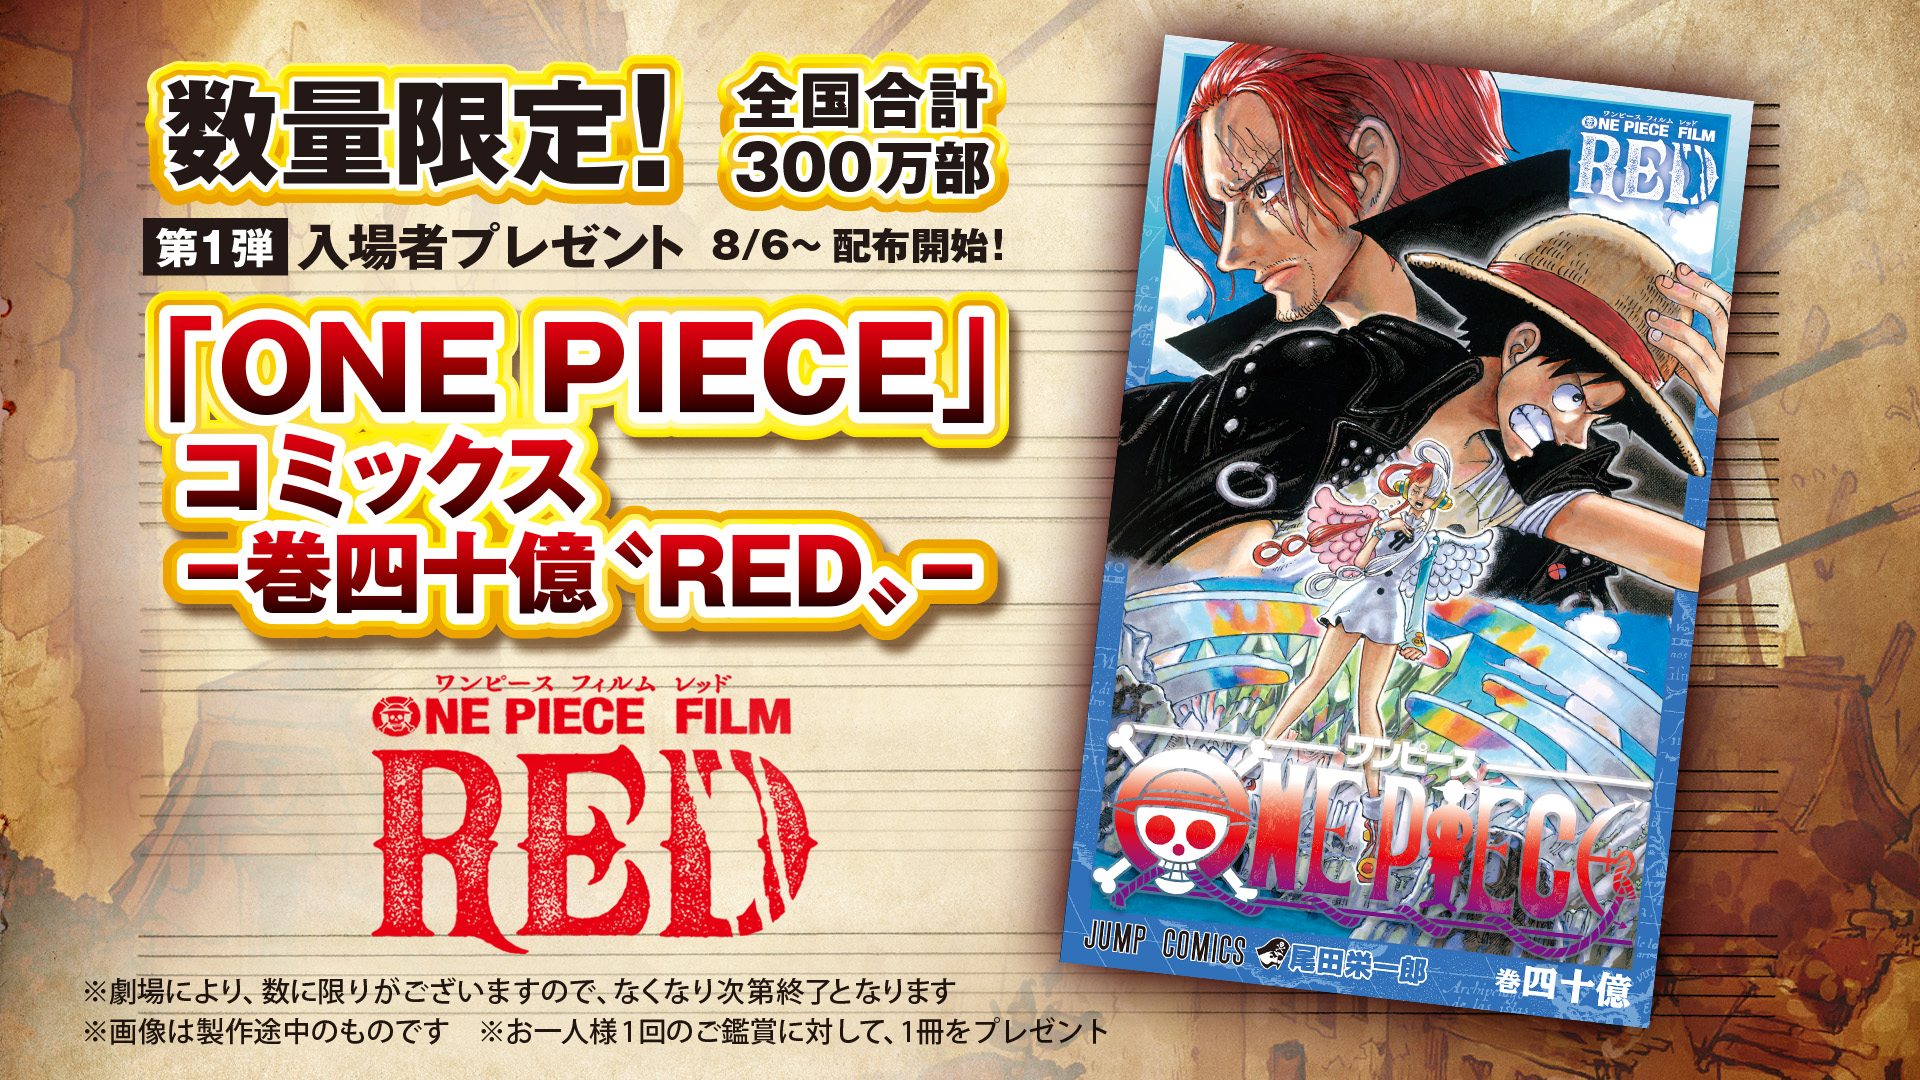 映画「ONE PIECE FILM RED」、入場者特典コミックス「-巻四十億“RED”-」の配布が決定！ - GAME Watch